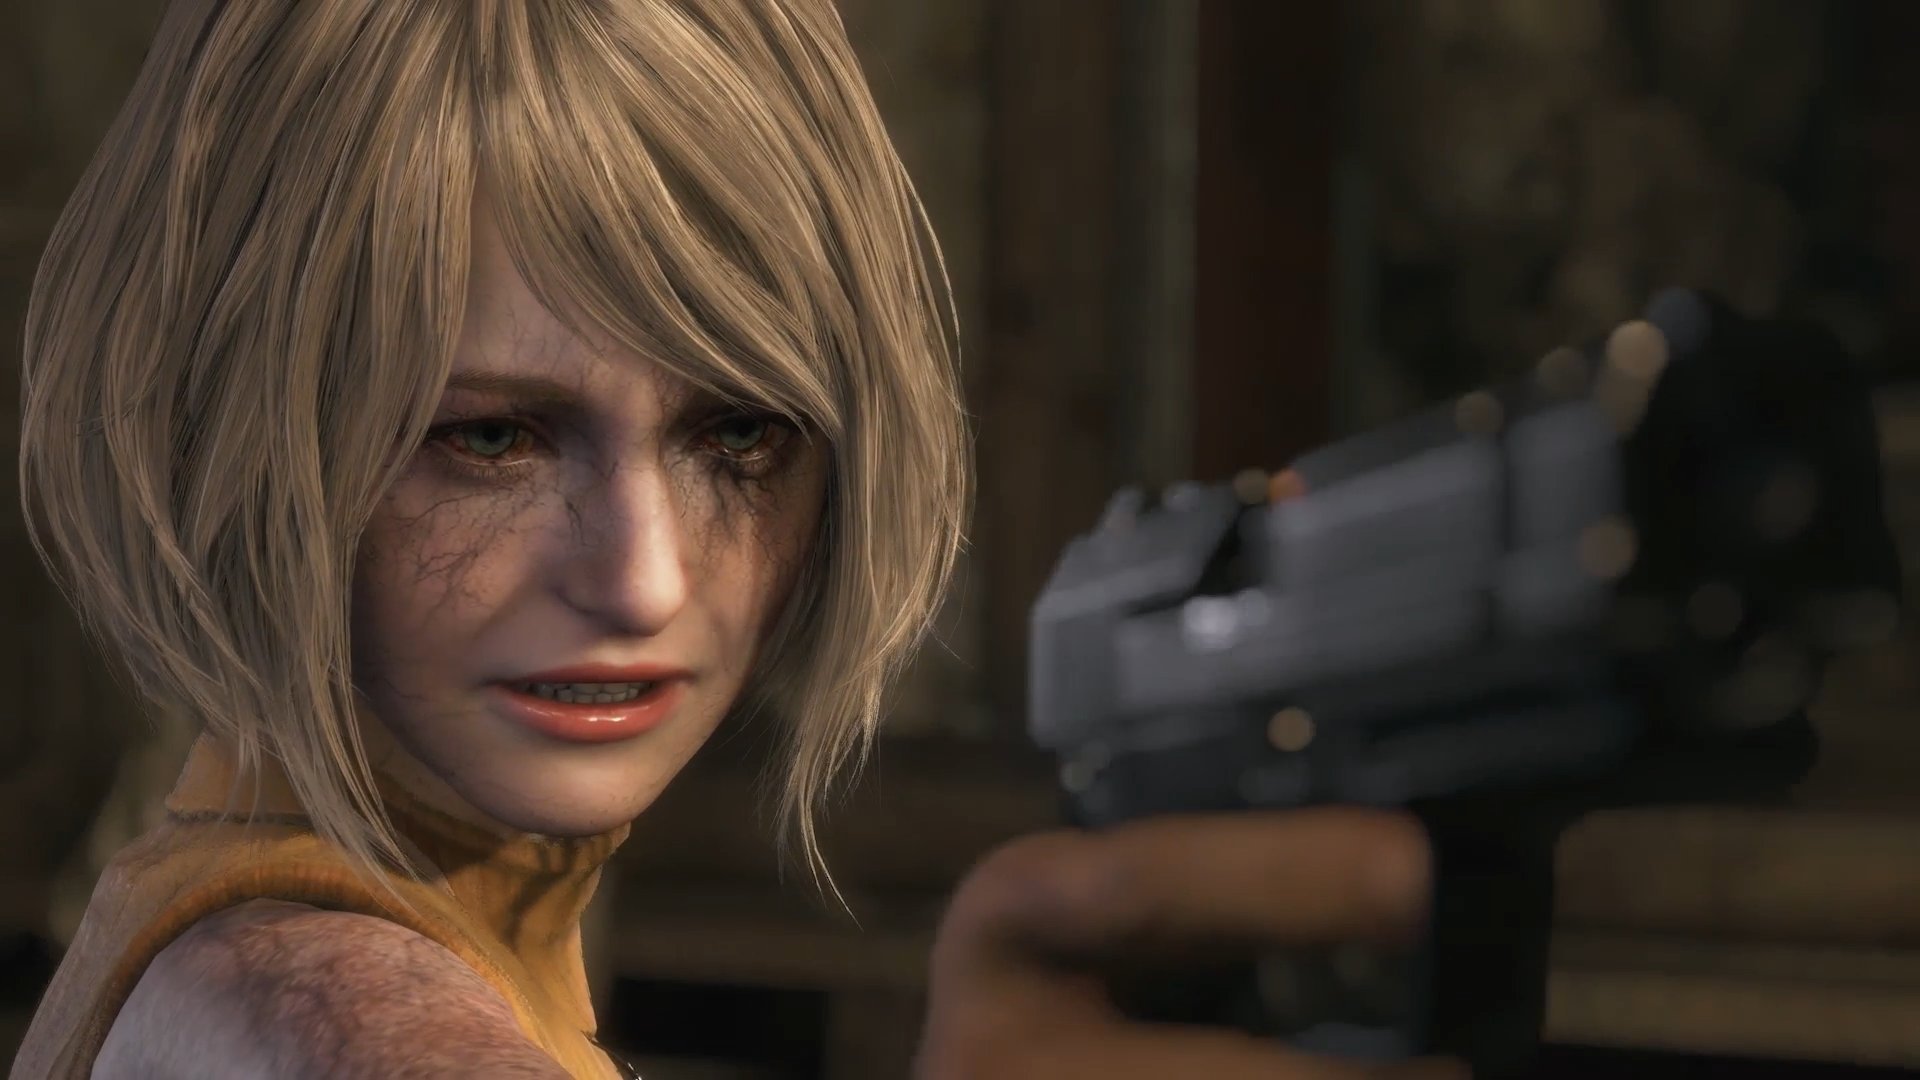 Resident Evil 4 Remake já tem data de lançamento confirmada - Millenium